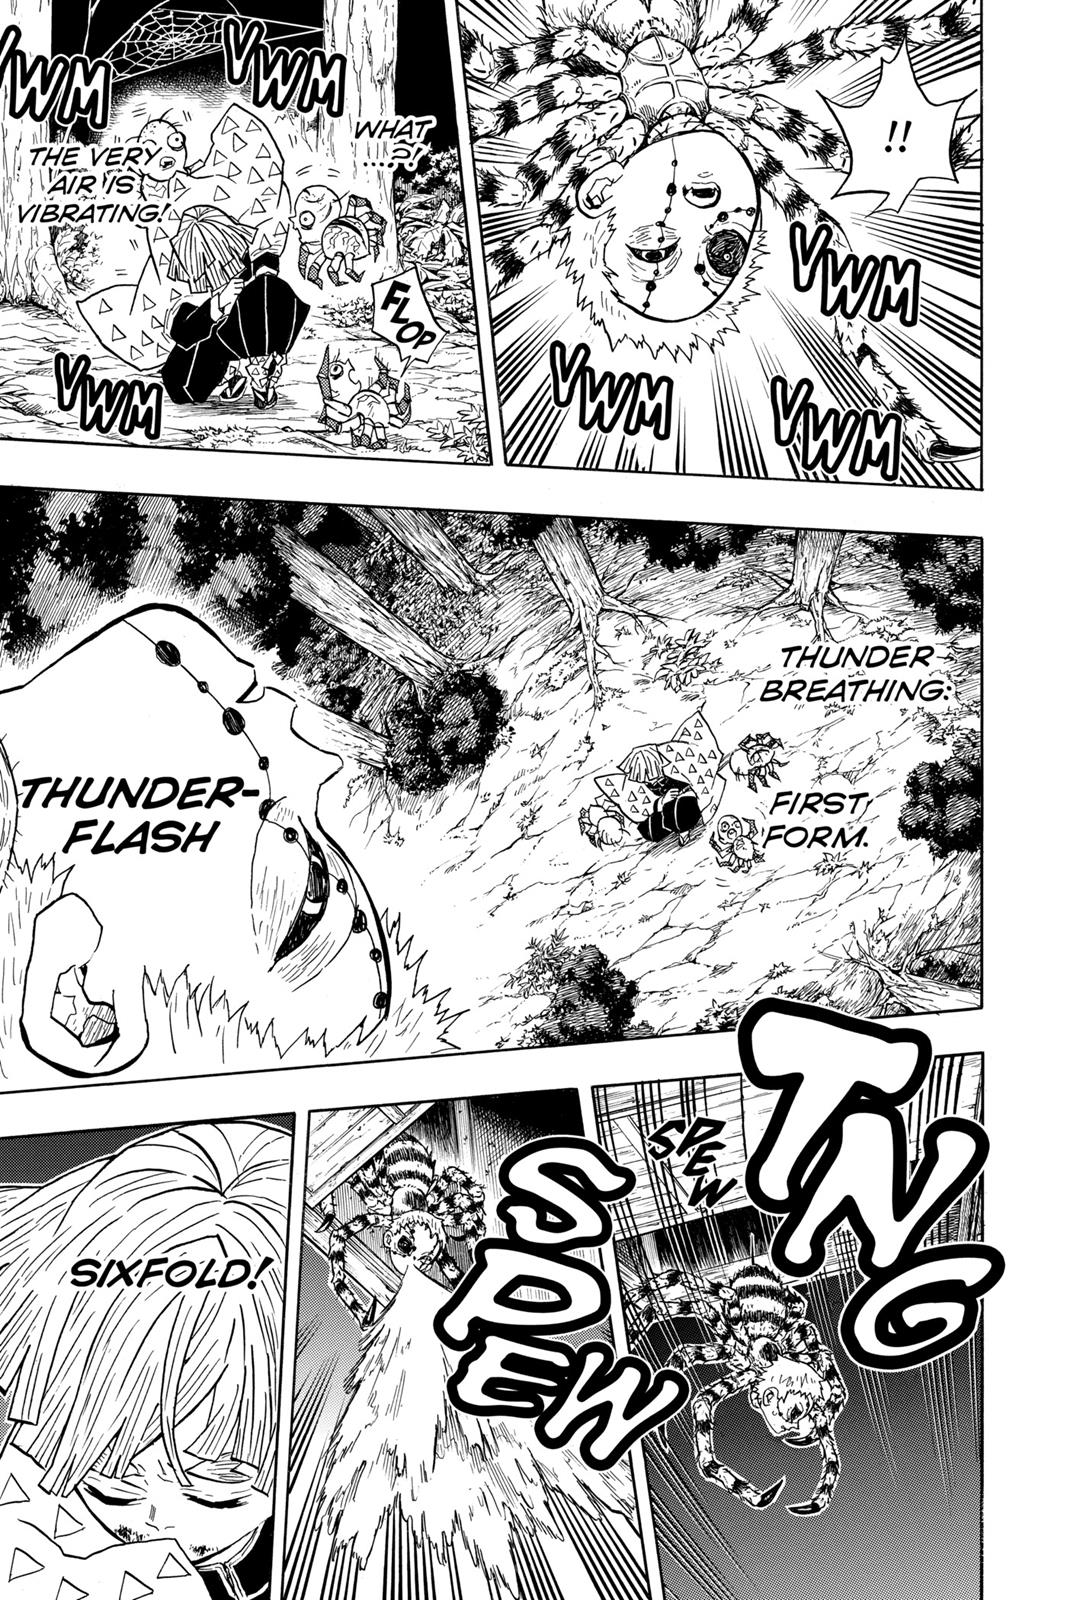 Demon Slayer Manga Manga Chapter - 34 - image 7